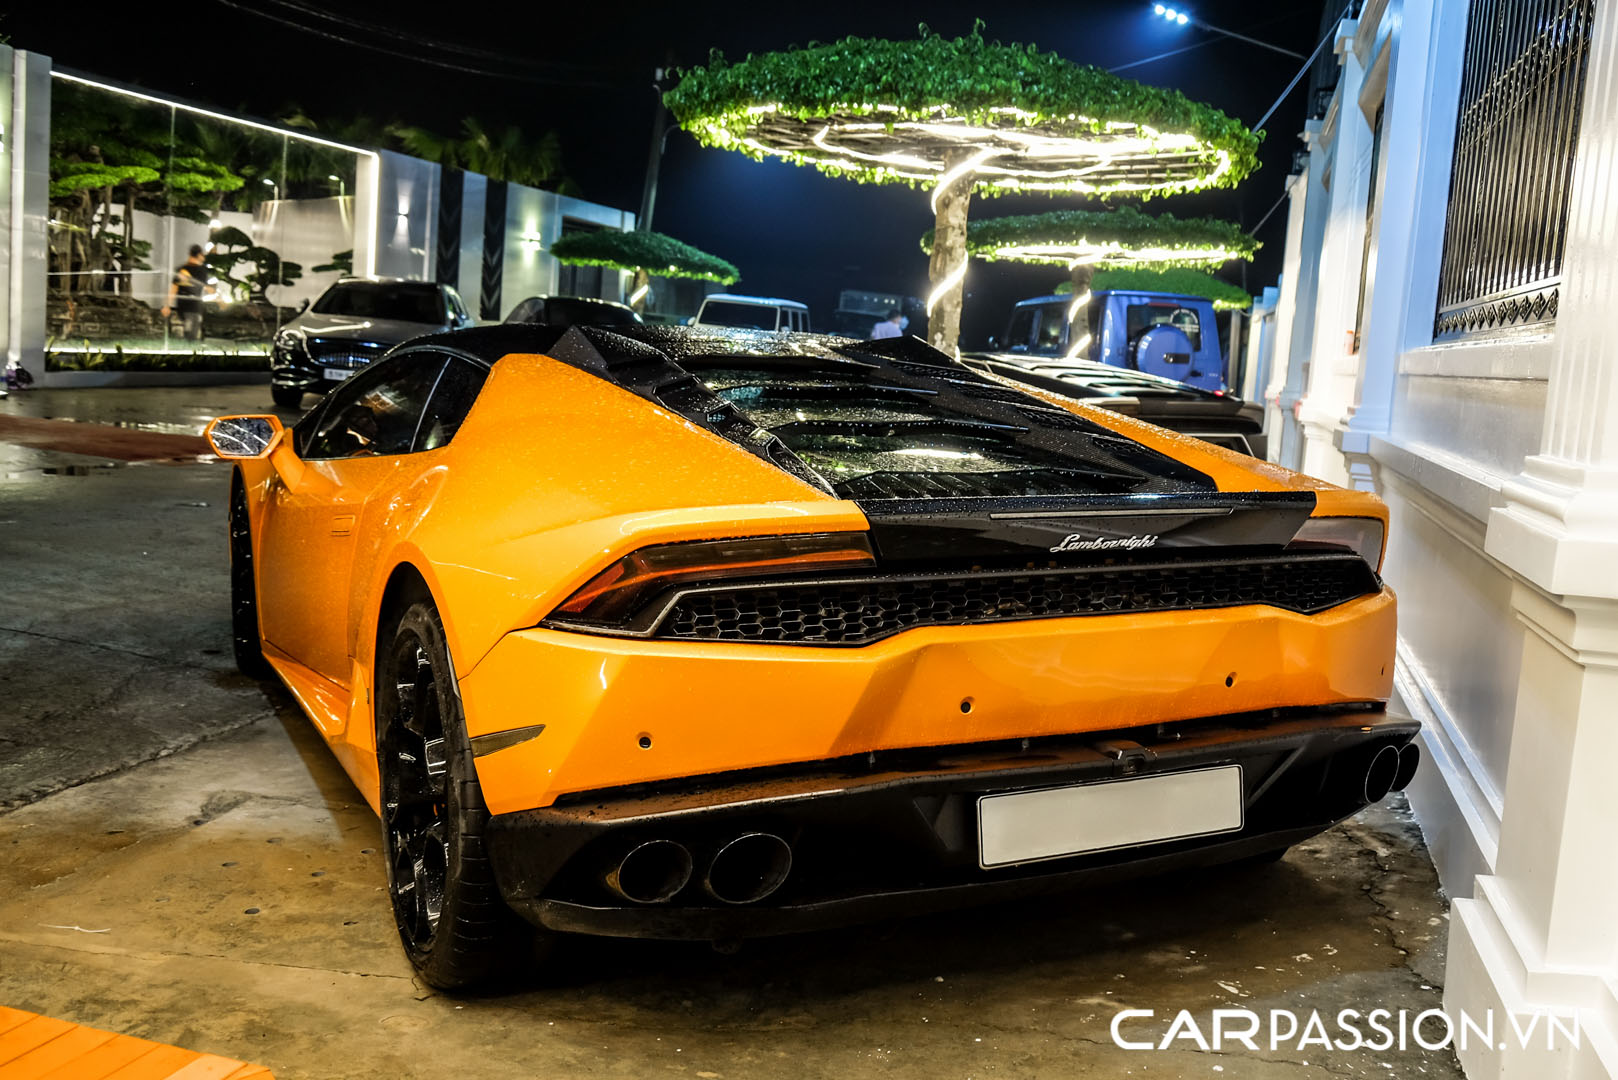 CP-Bộ đôi Lamborghini Huracan độ độc đáo39.jpg